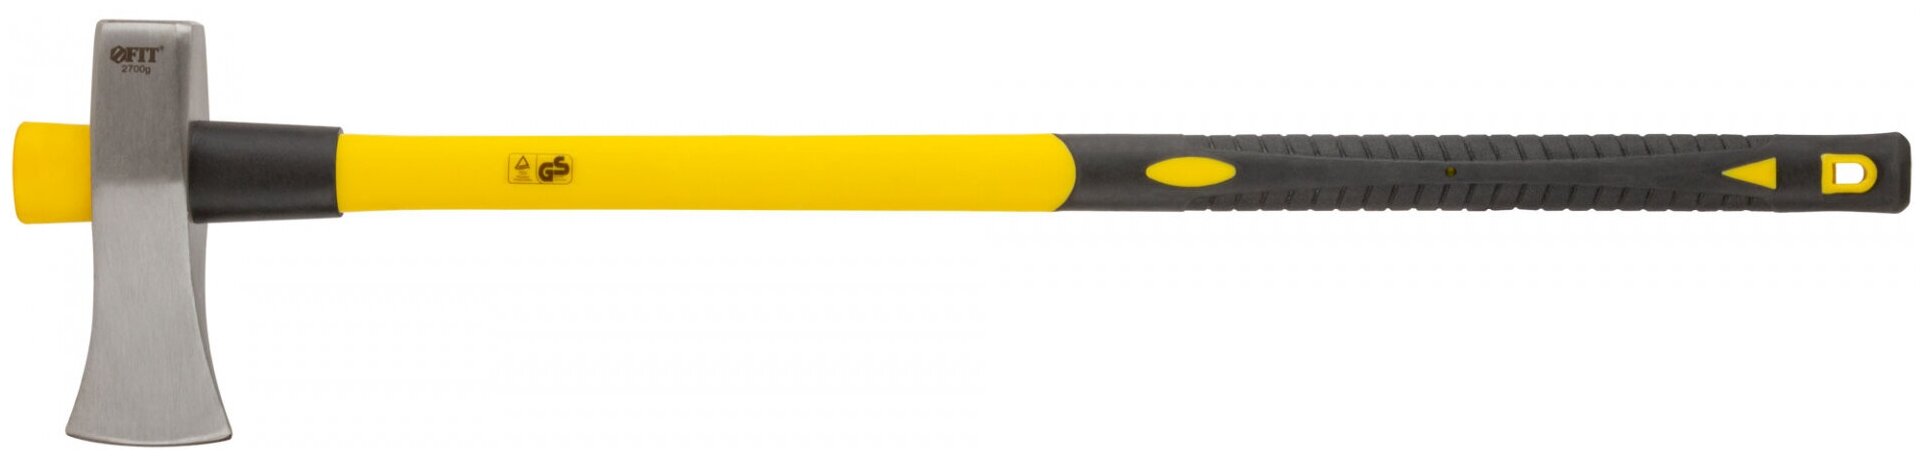 Топор-колун для дров 2,7 кг, 900мм FIT 46163 фиберглассовая ручка